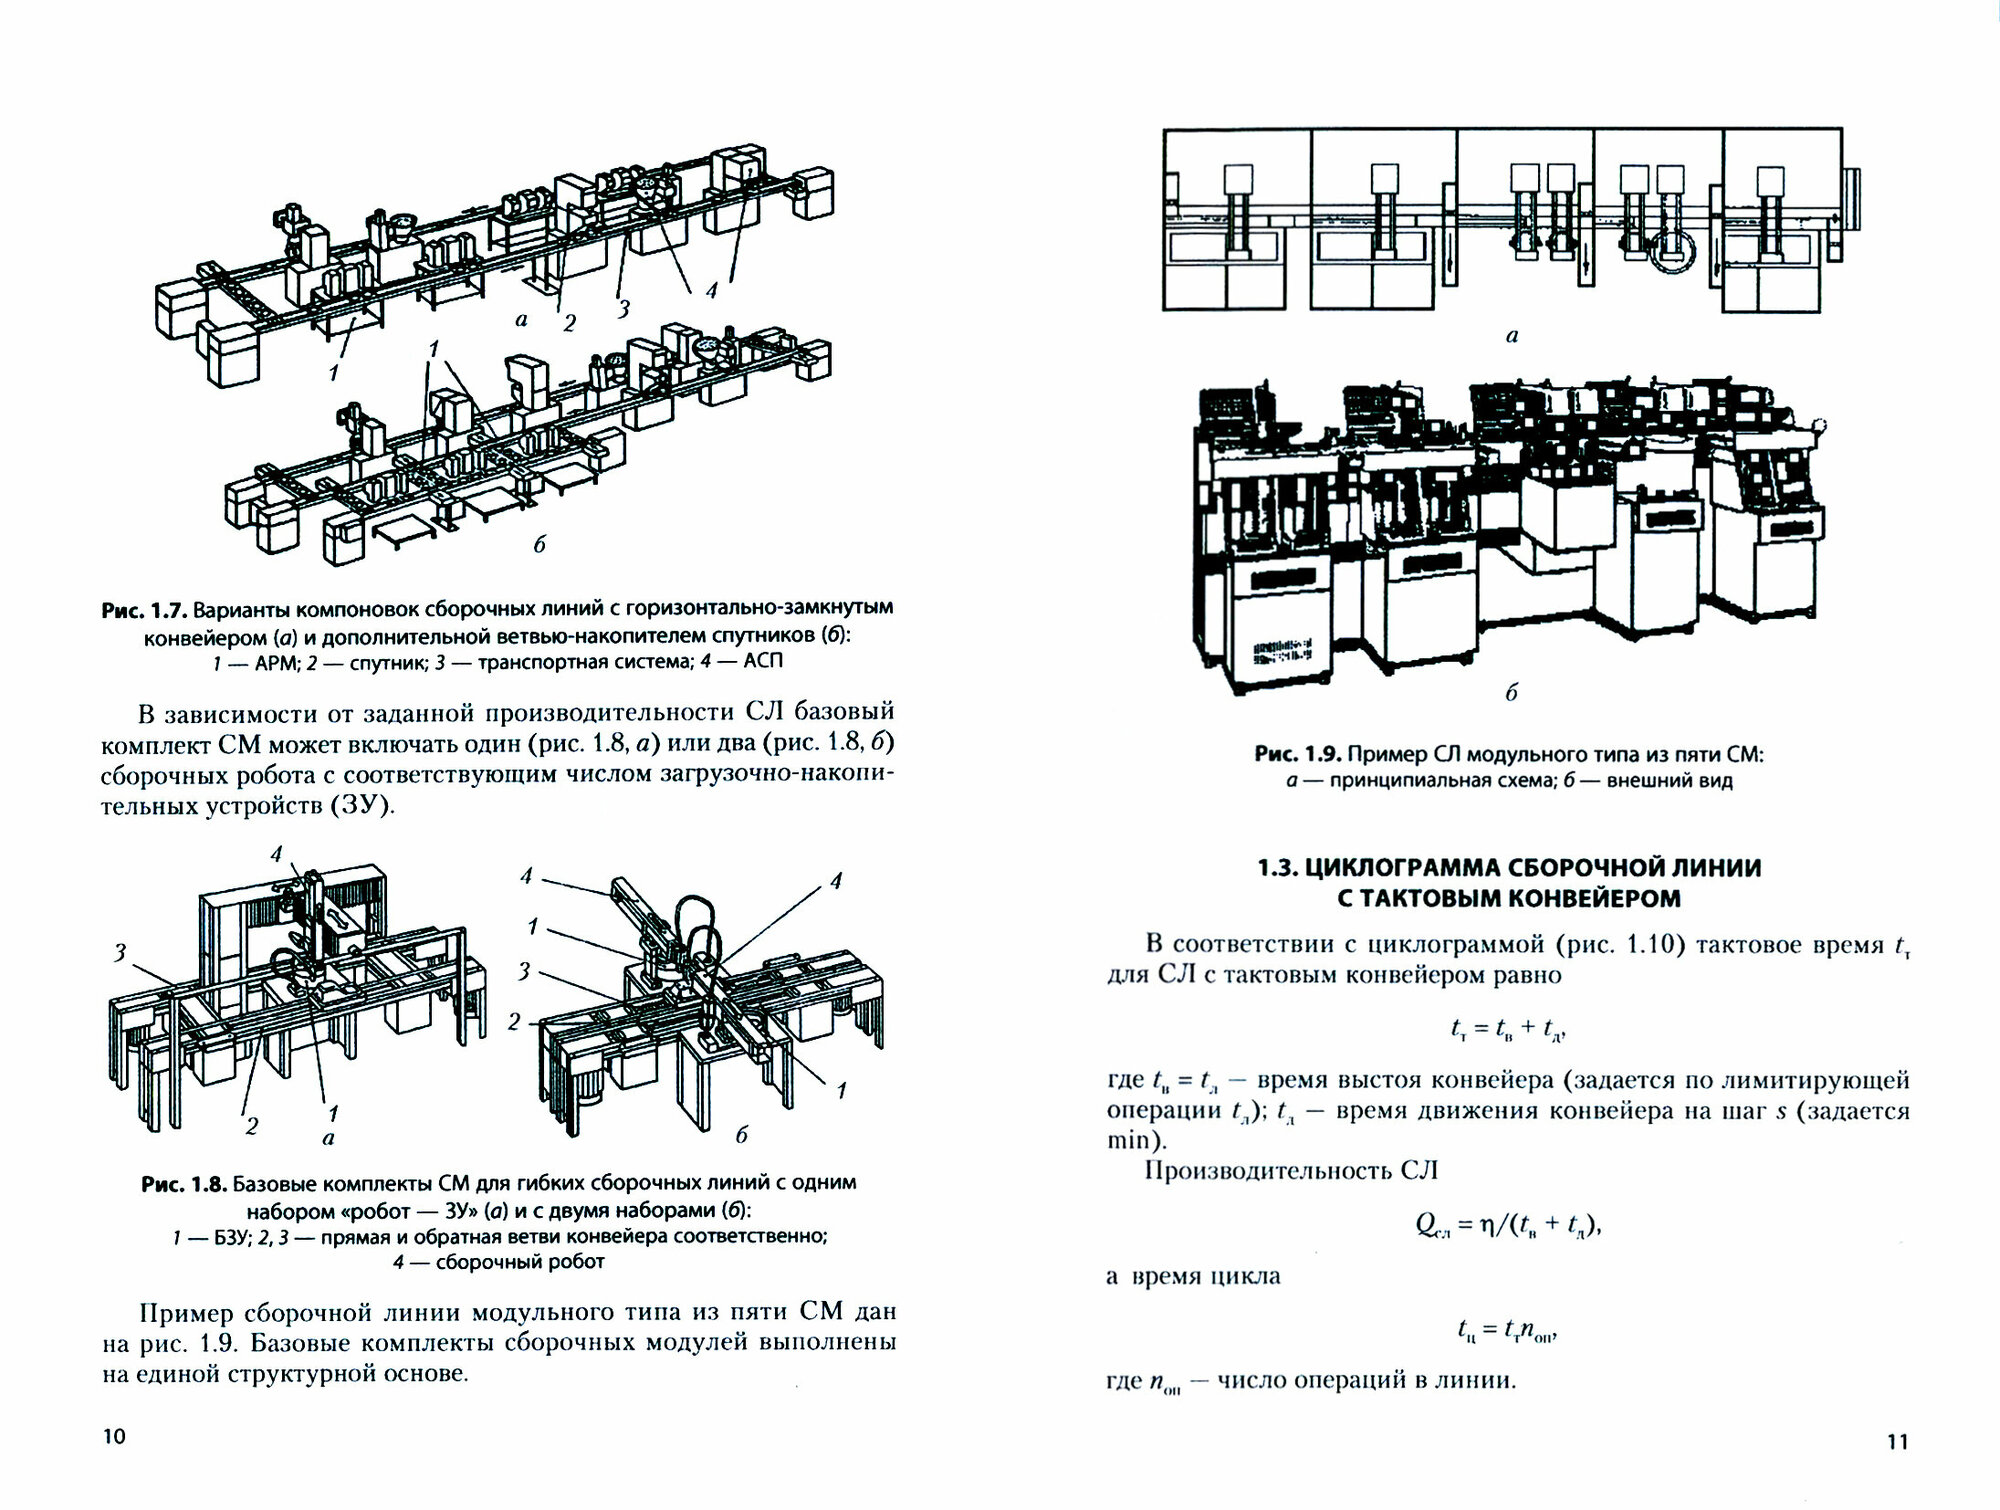 Гибкие сборочные линии модульного типа на единой структурной основе. Учебное пособие - фото №3